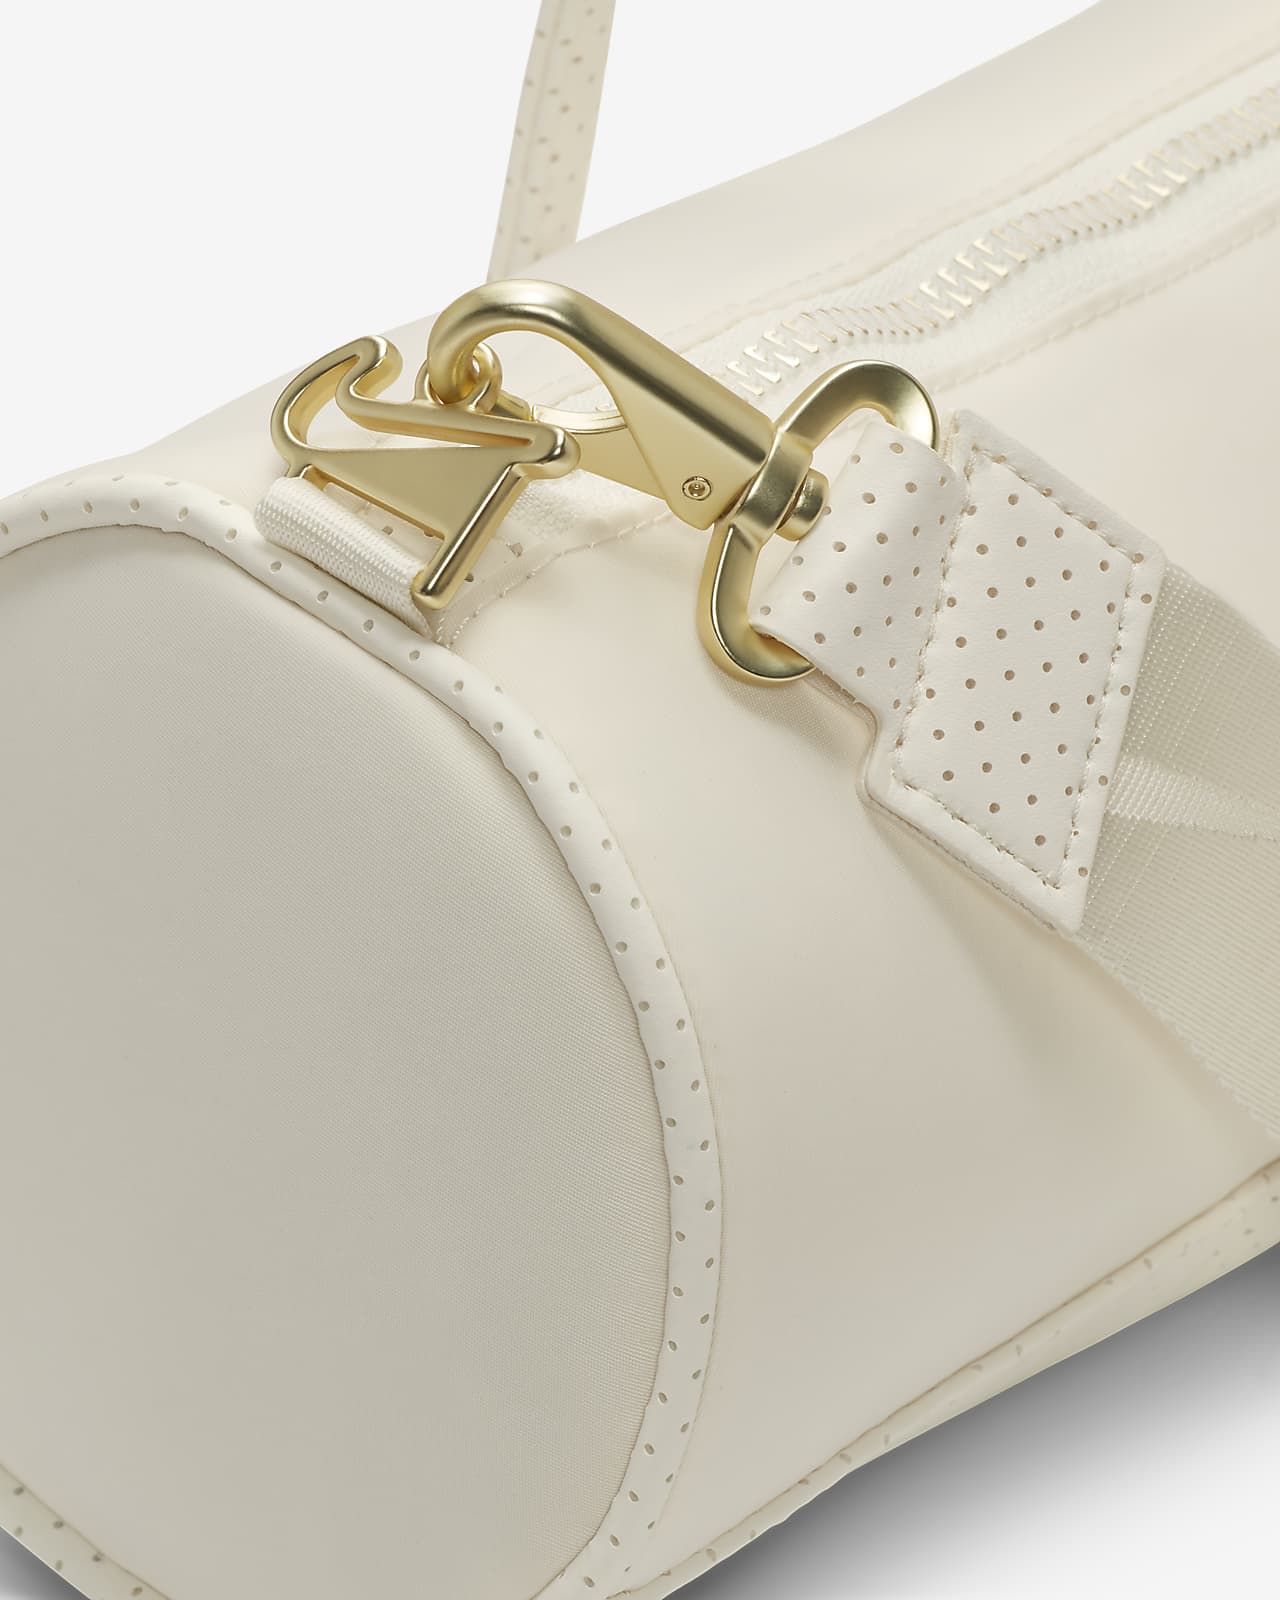 Authentic Louis Vuitton Beige Nylon Adjustable Sporty Bag Strap